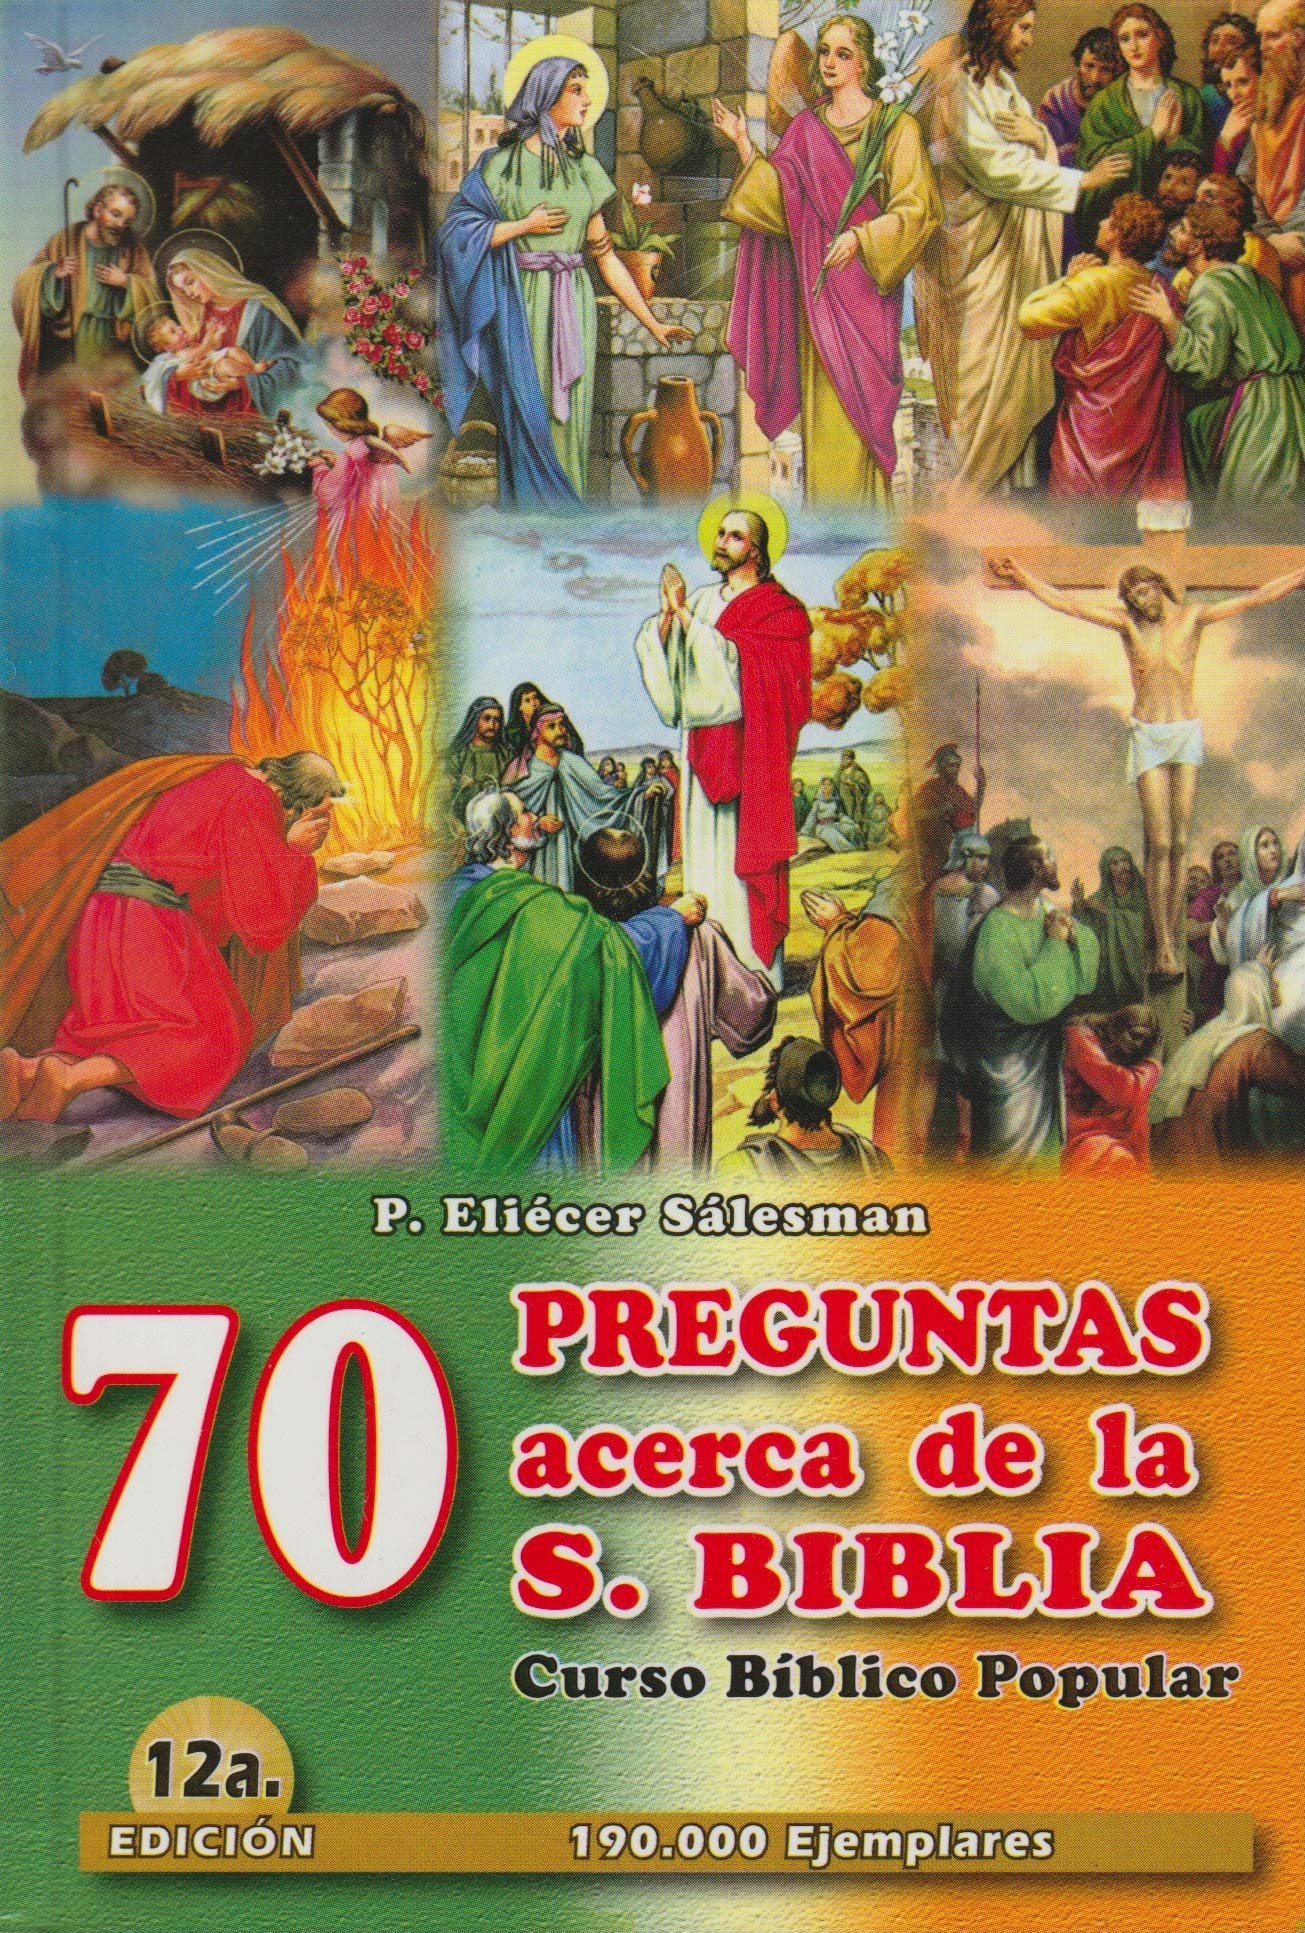 Curso Biblico Popular 70 Preguntas Acerca De La S. Biblia